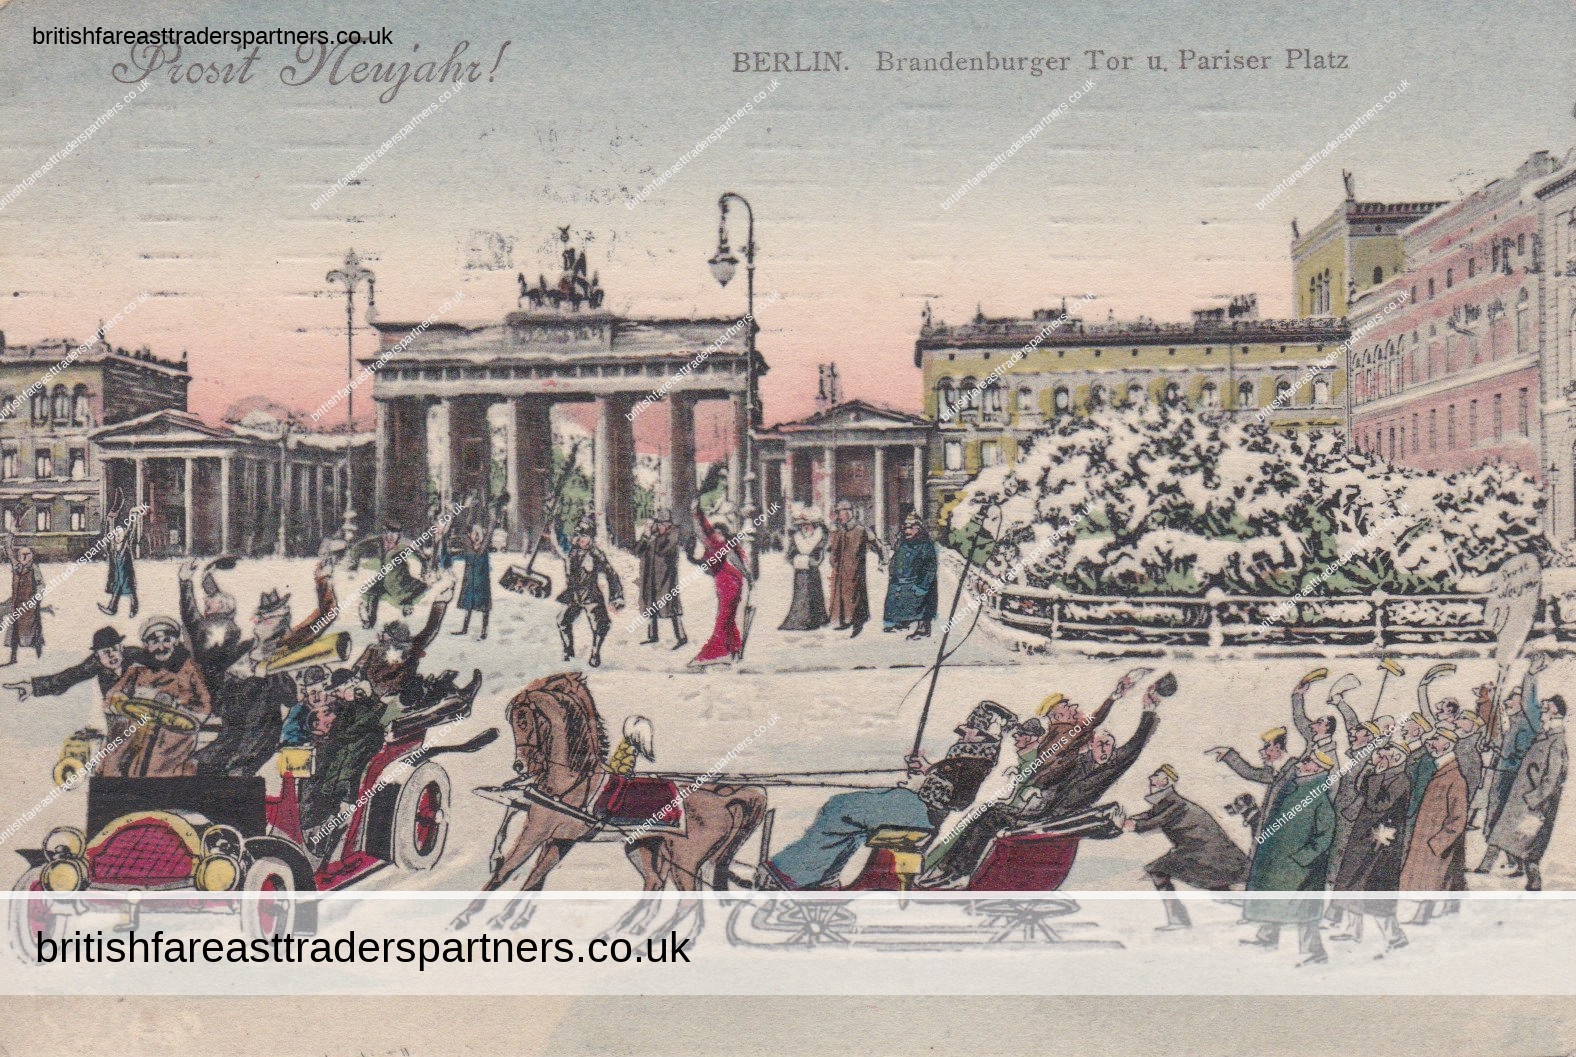 Antique 1910 “Brandenburger Tor u Pariser Platz” Prosit Neujahr Germany Postcard